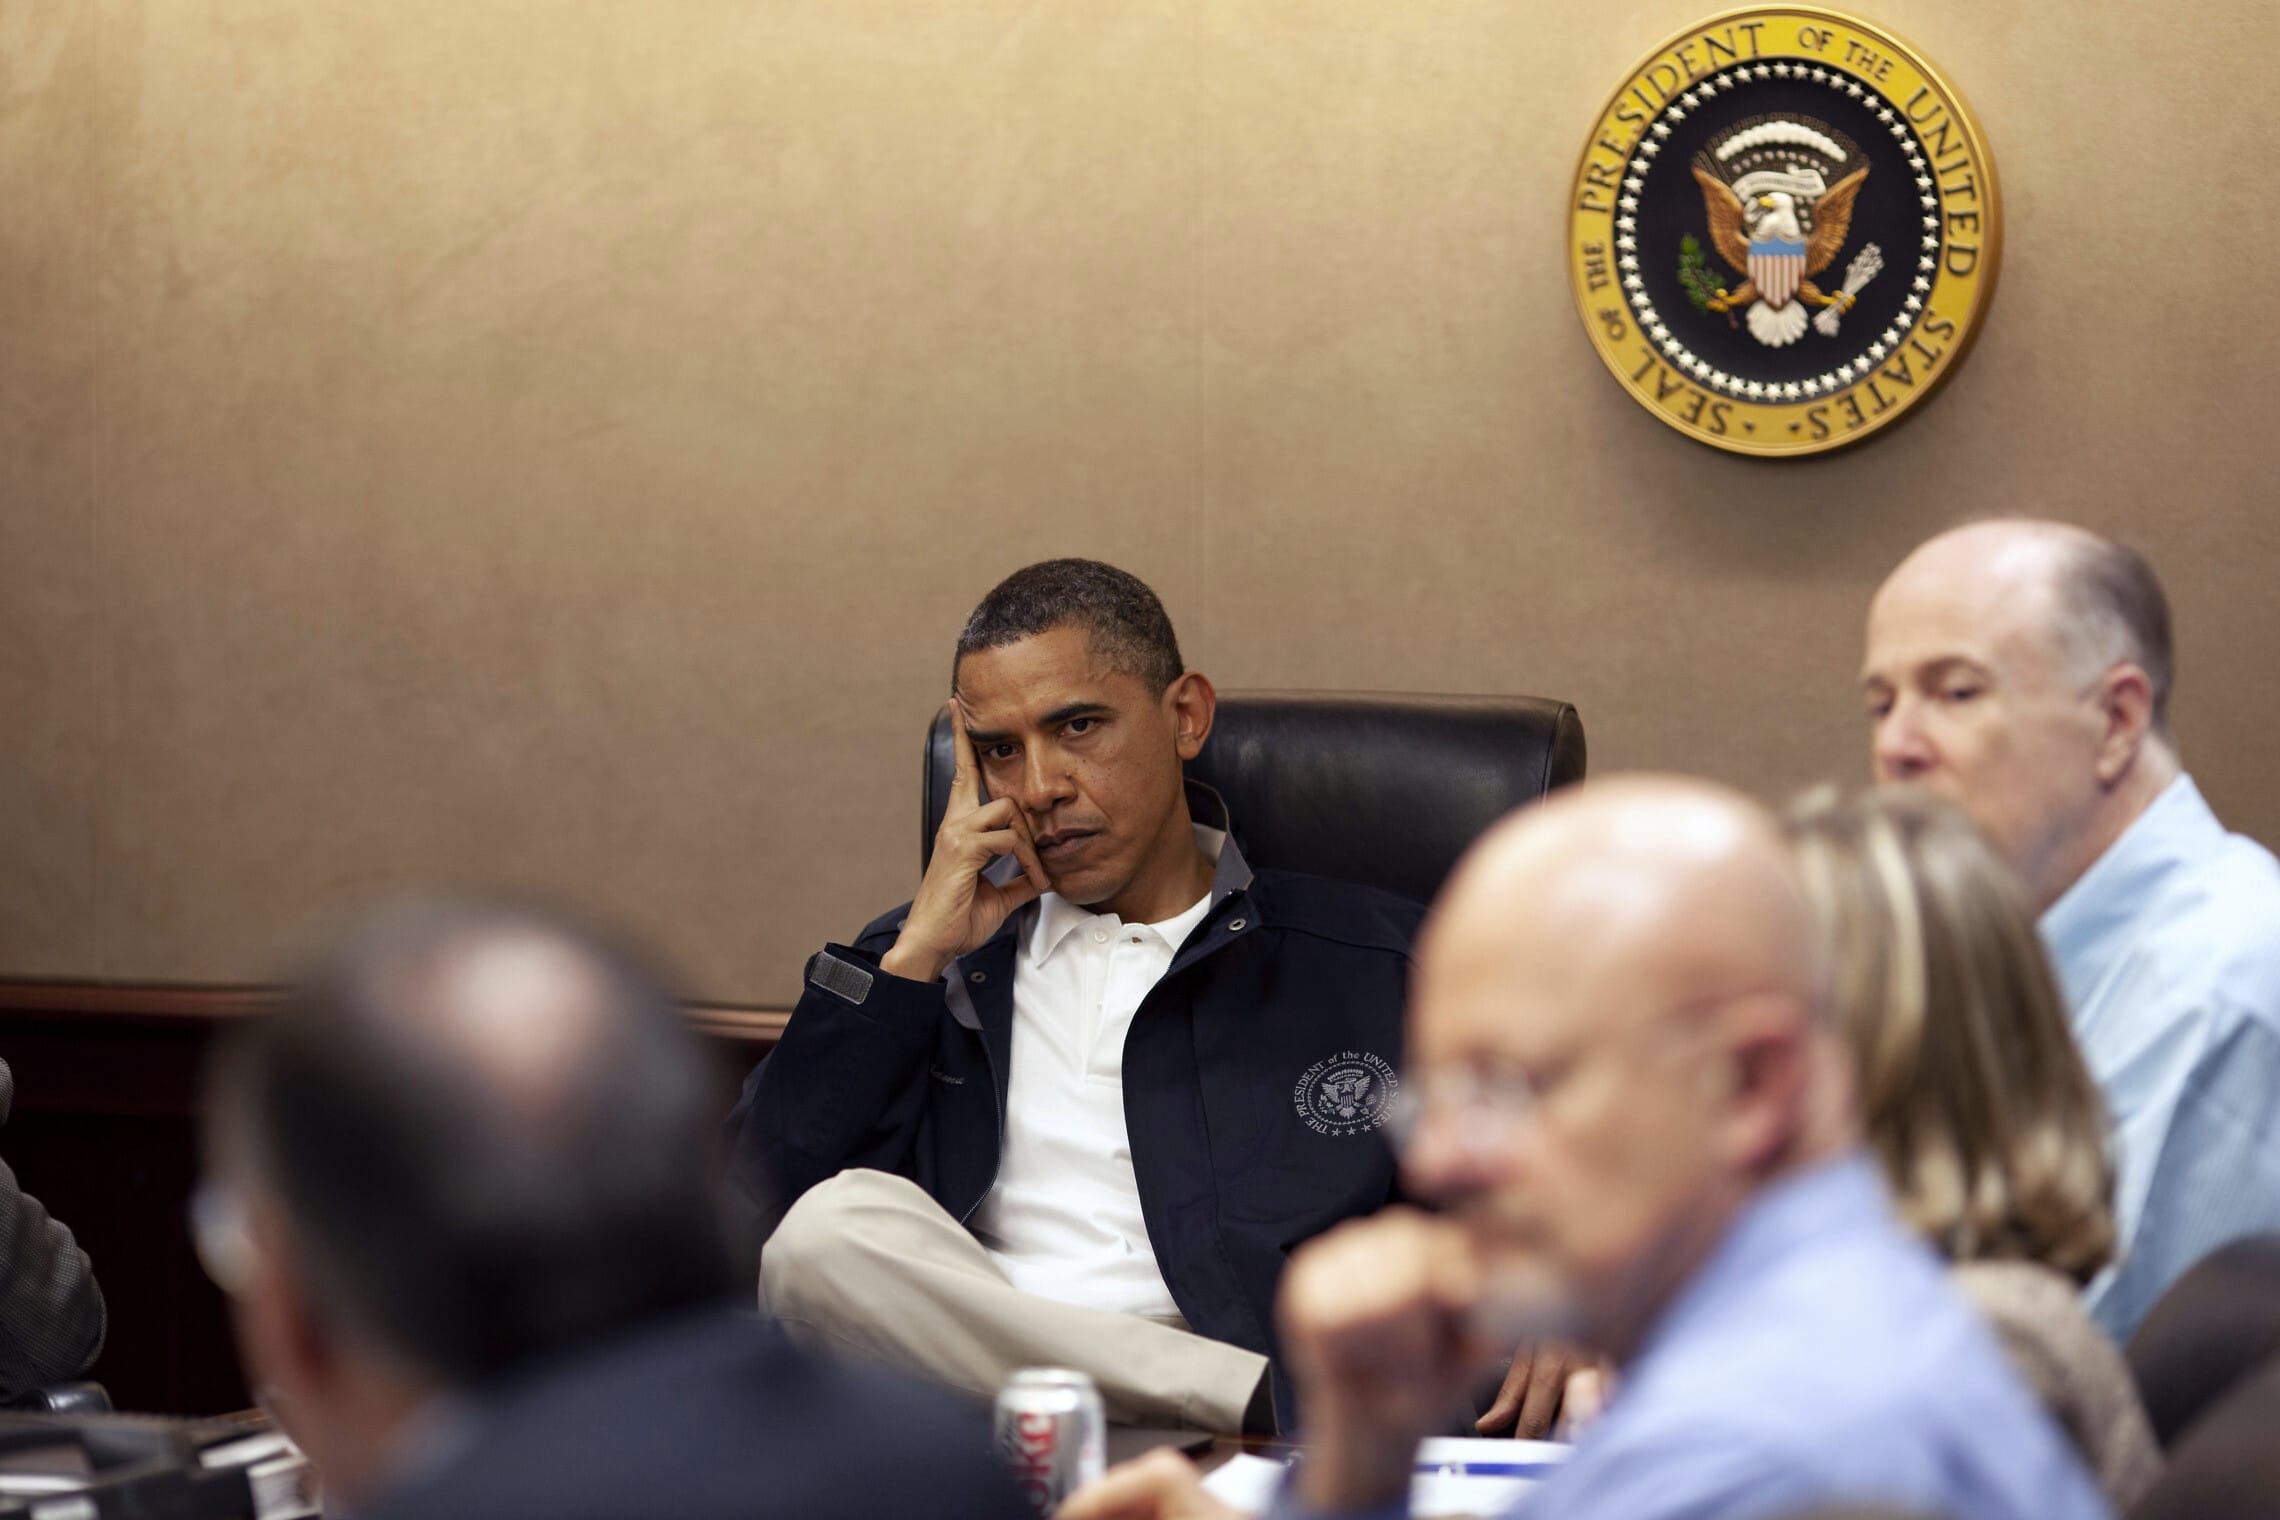 נשיא ארצות הברית ברק אובמה בחדר המצב במהלך המשימה לחיסול אוסמה בן לאדן, 1 במאי 2011 (צילום: Official White House Photo by Pete Souza)